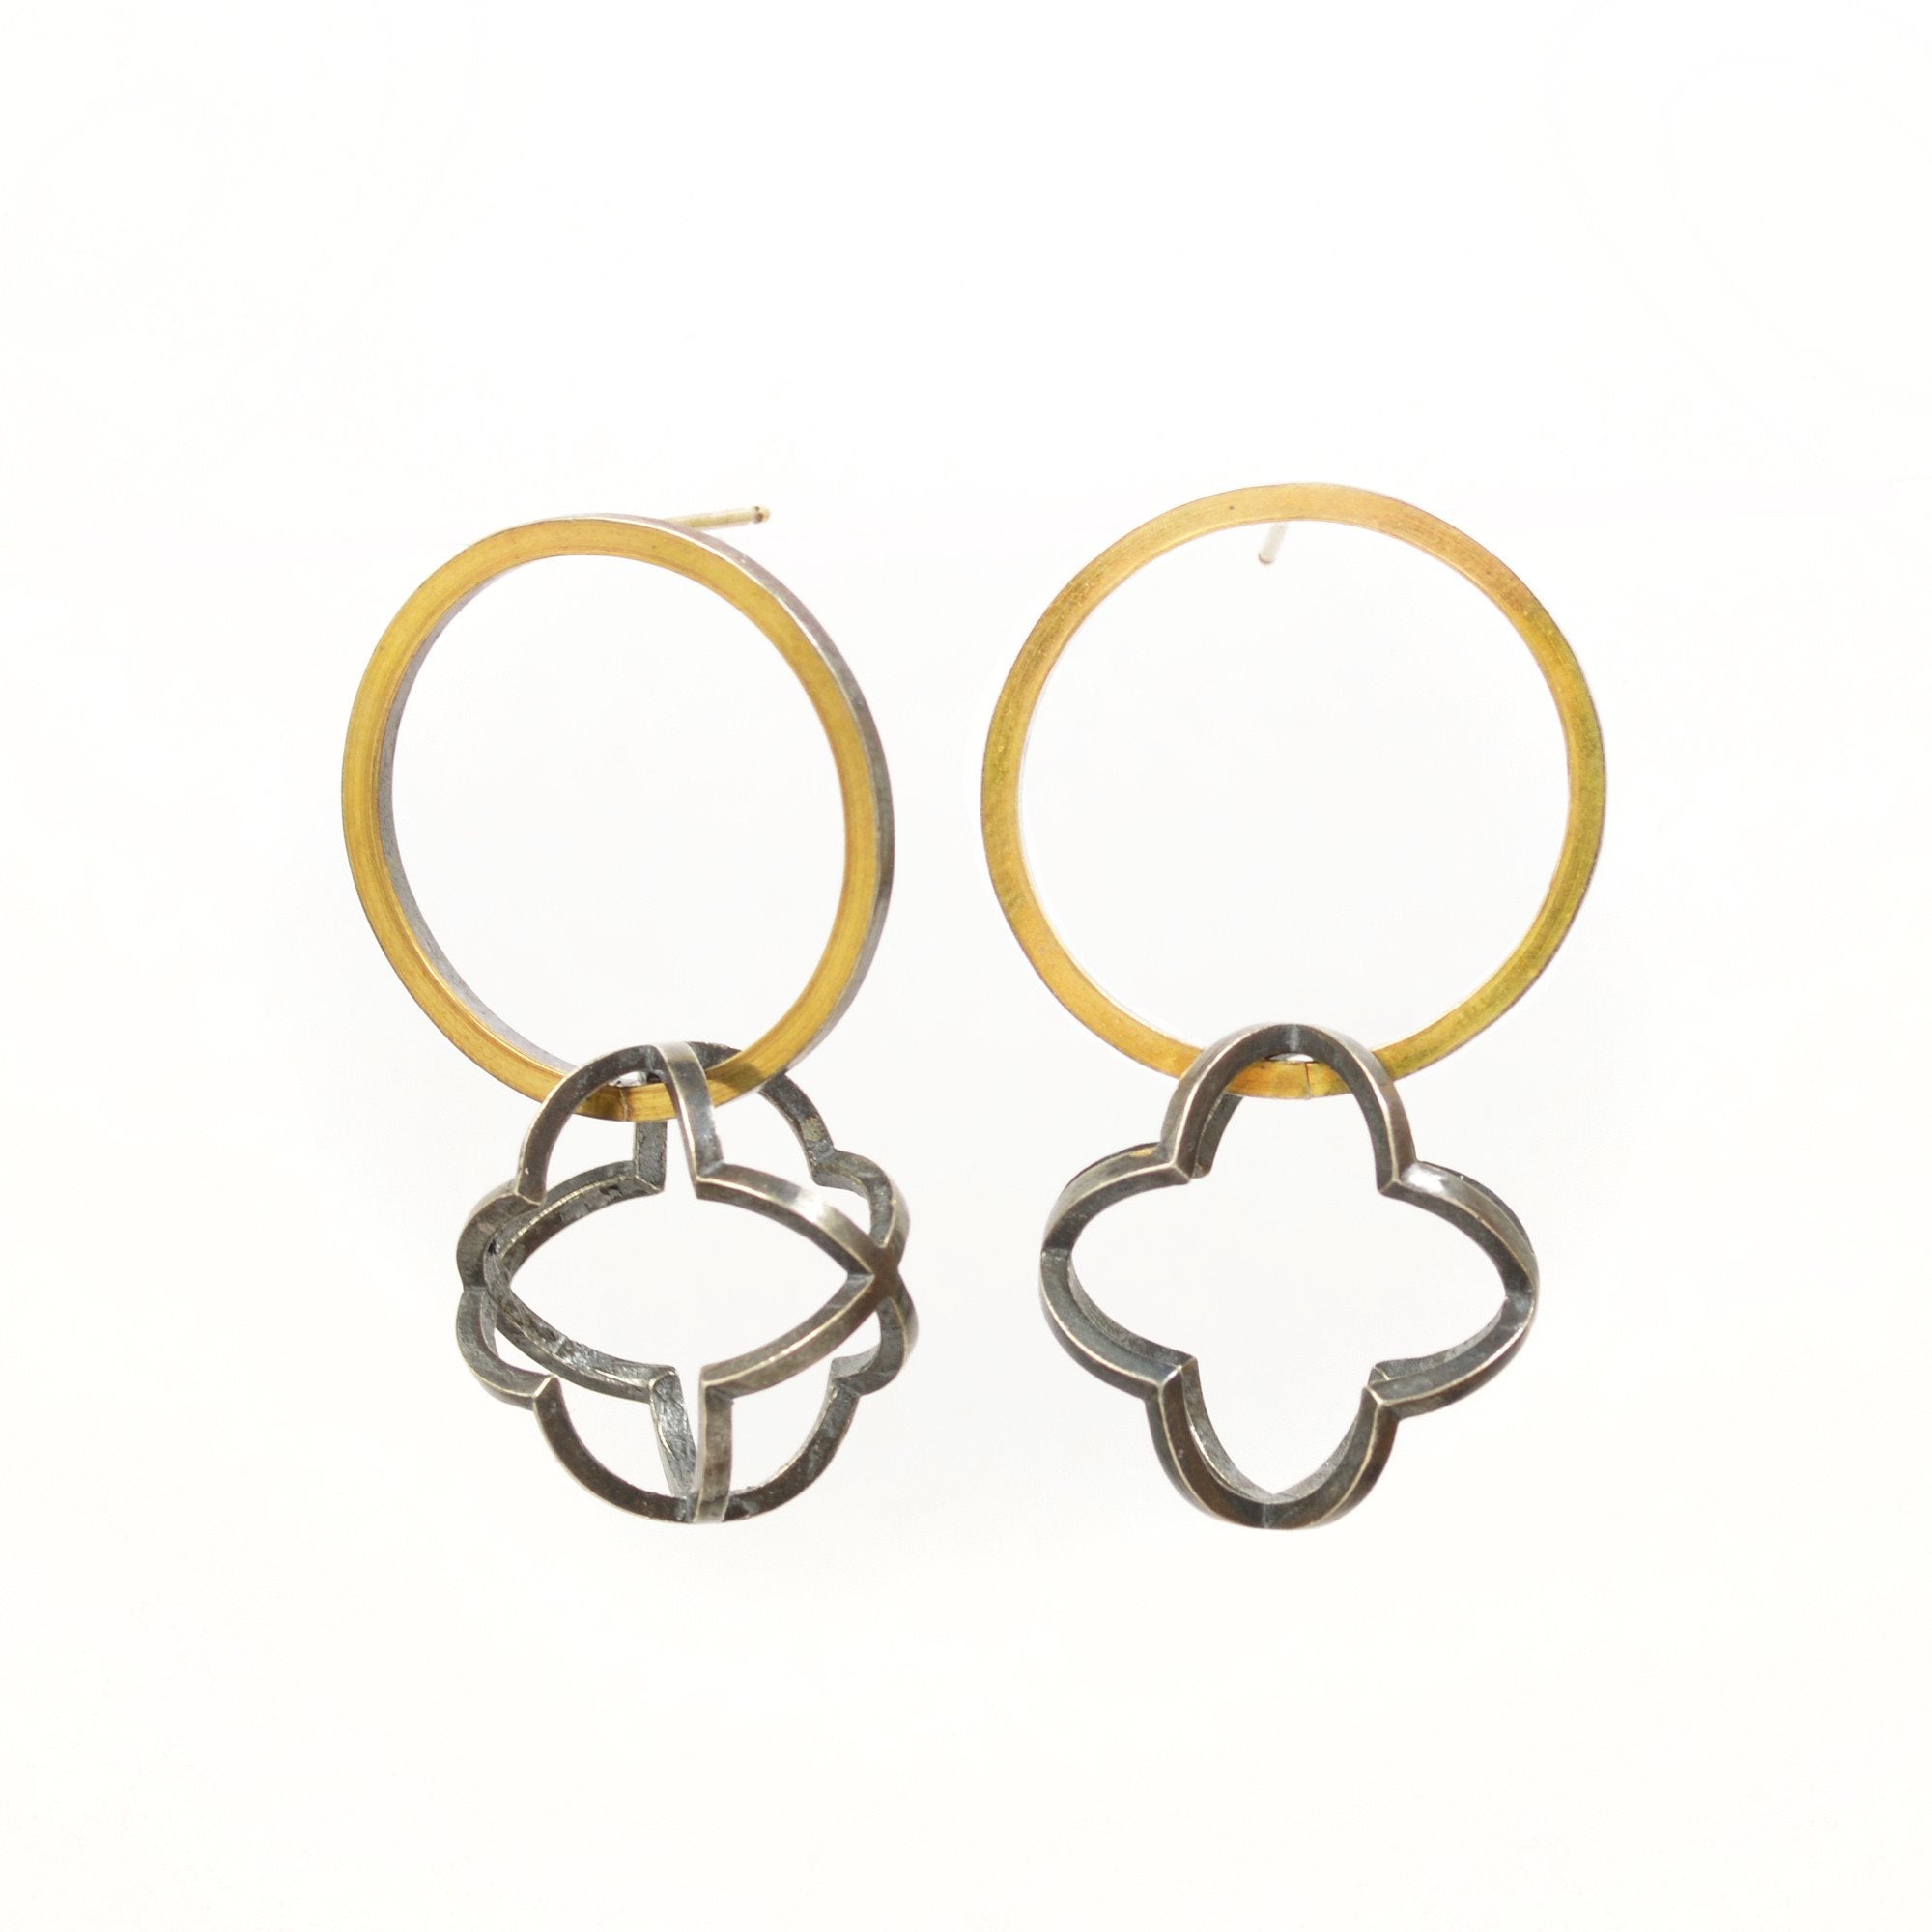 Quatrefoil Orbit Hoop Earrings in 22k gold, Sterling silver with Black Patina